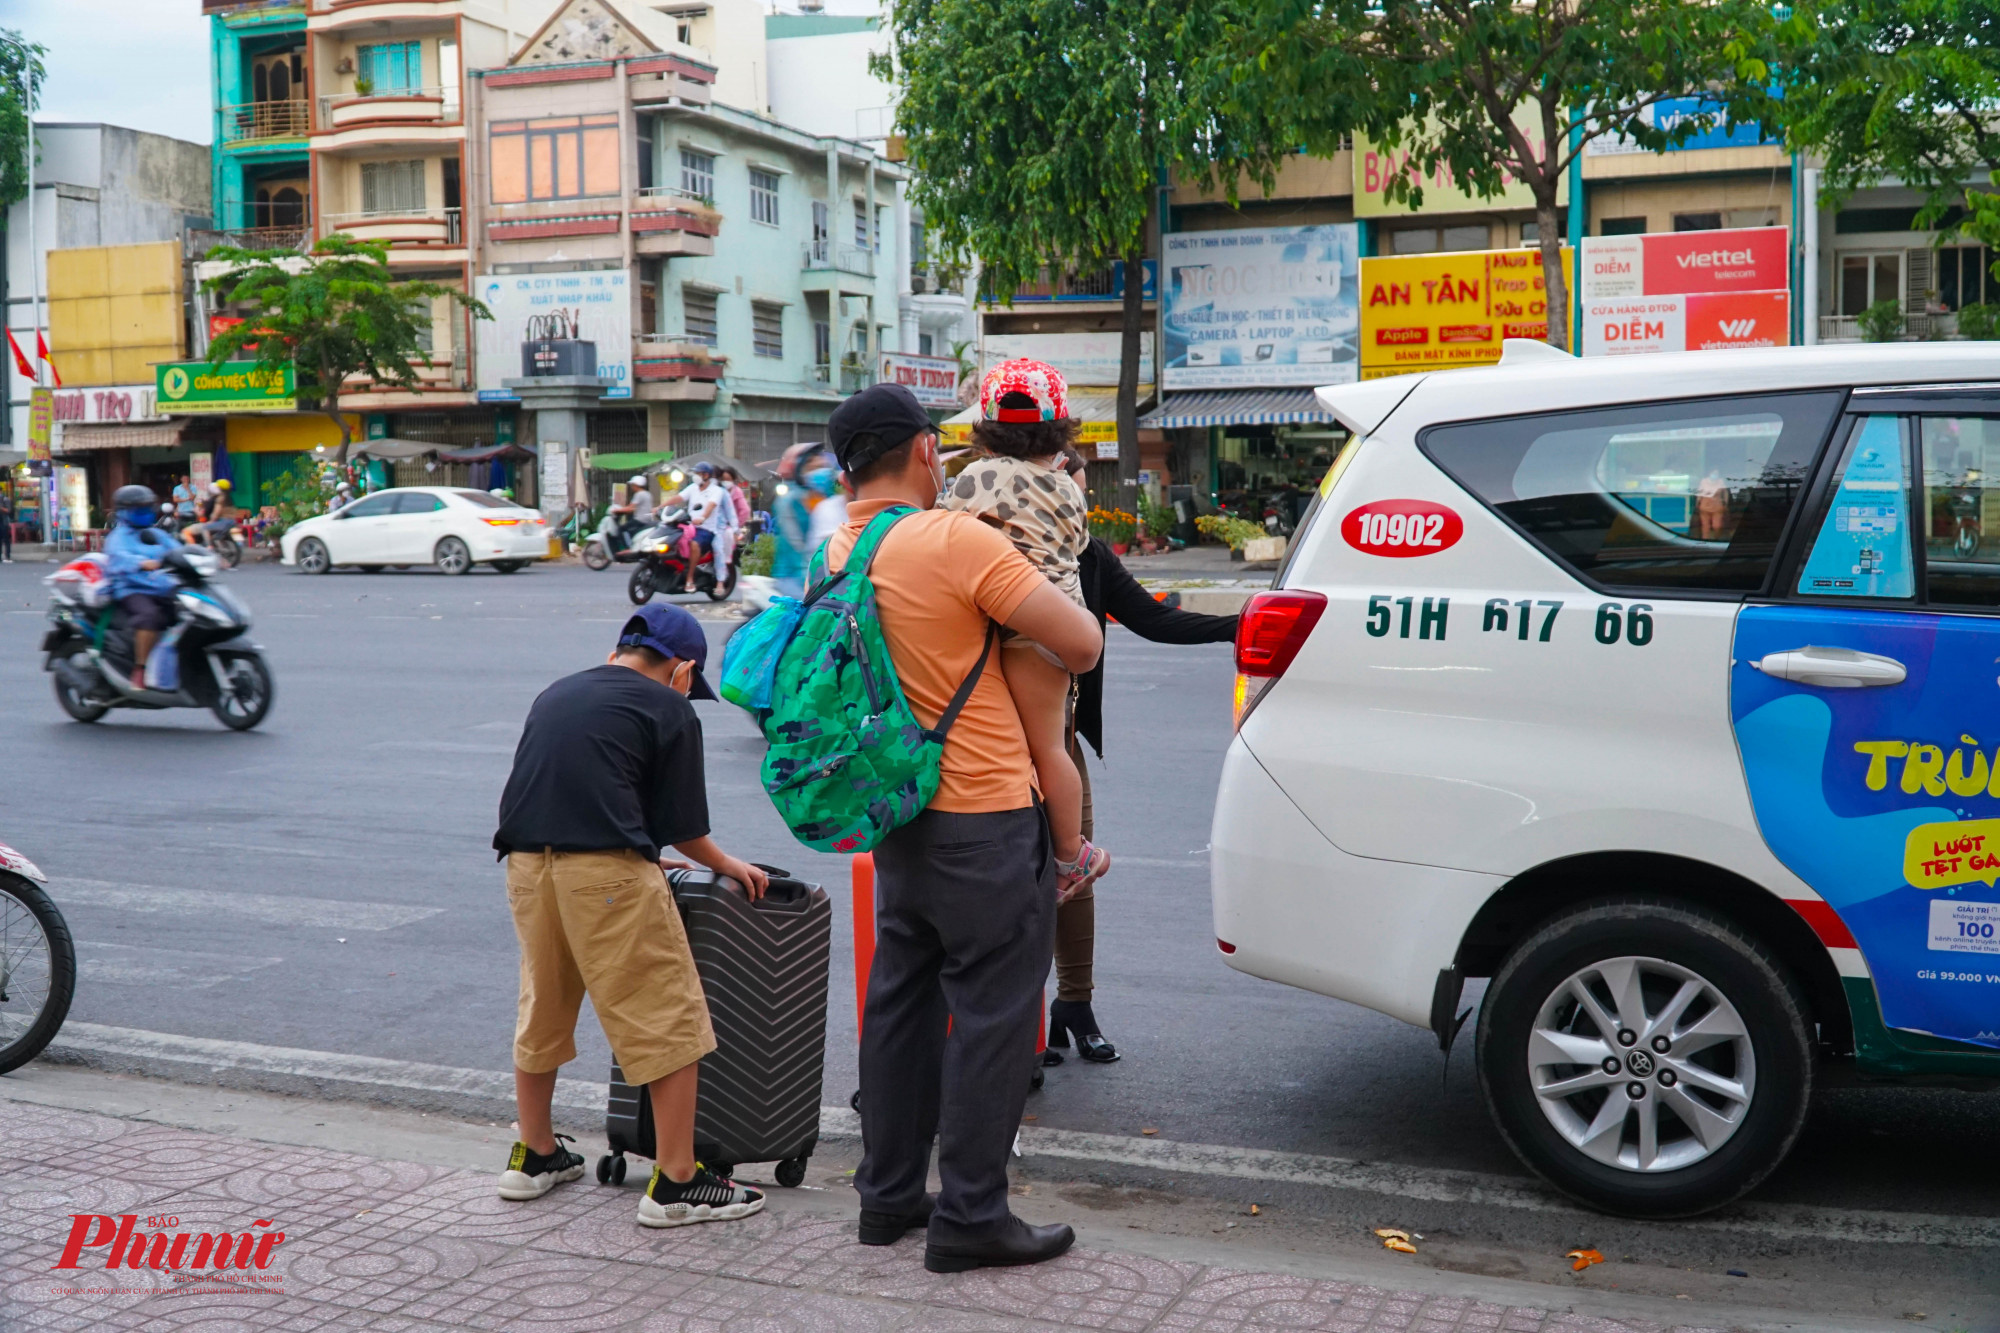 Dù mật độ người dân trở về TPHCM đông, nhưng lượng xe taxi, xe ôm công nghệ vẫn đáp ứng đủ số lượng này